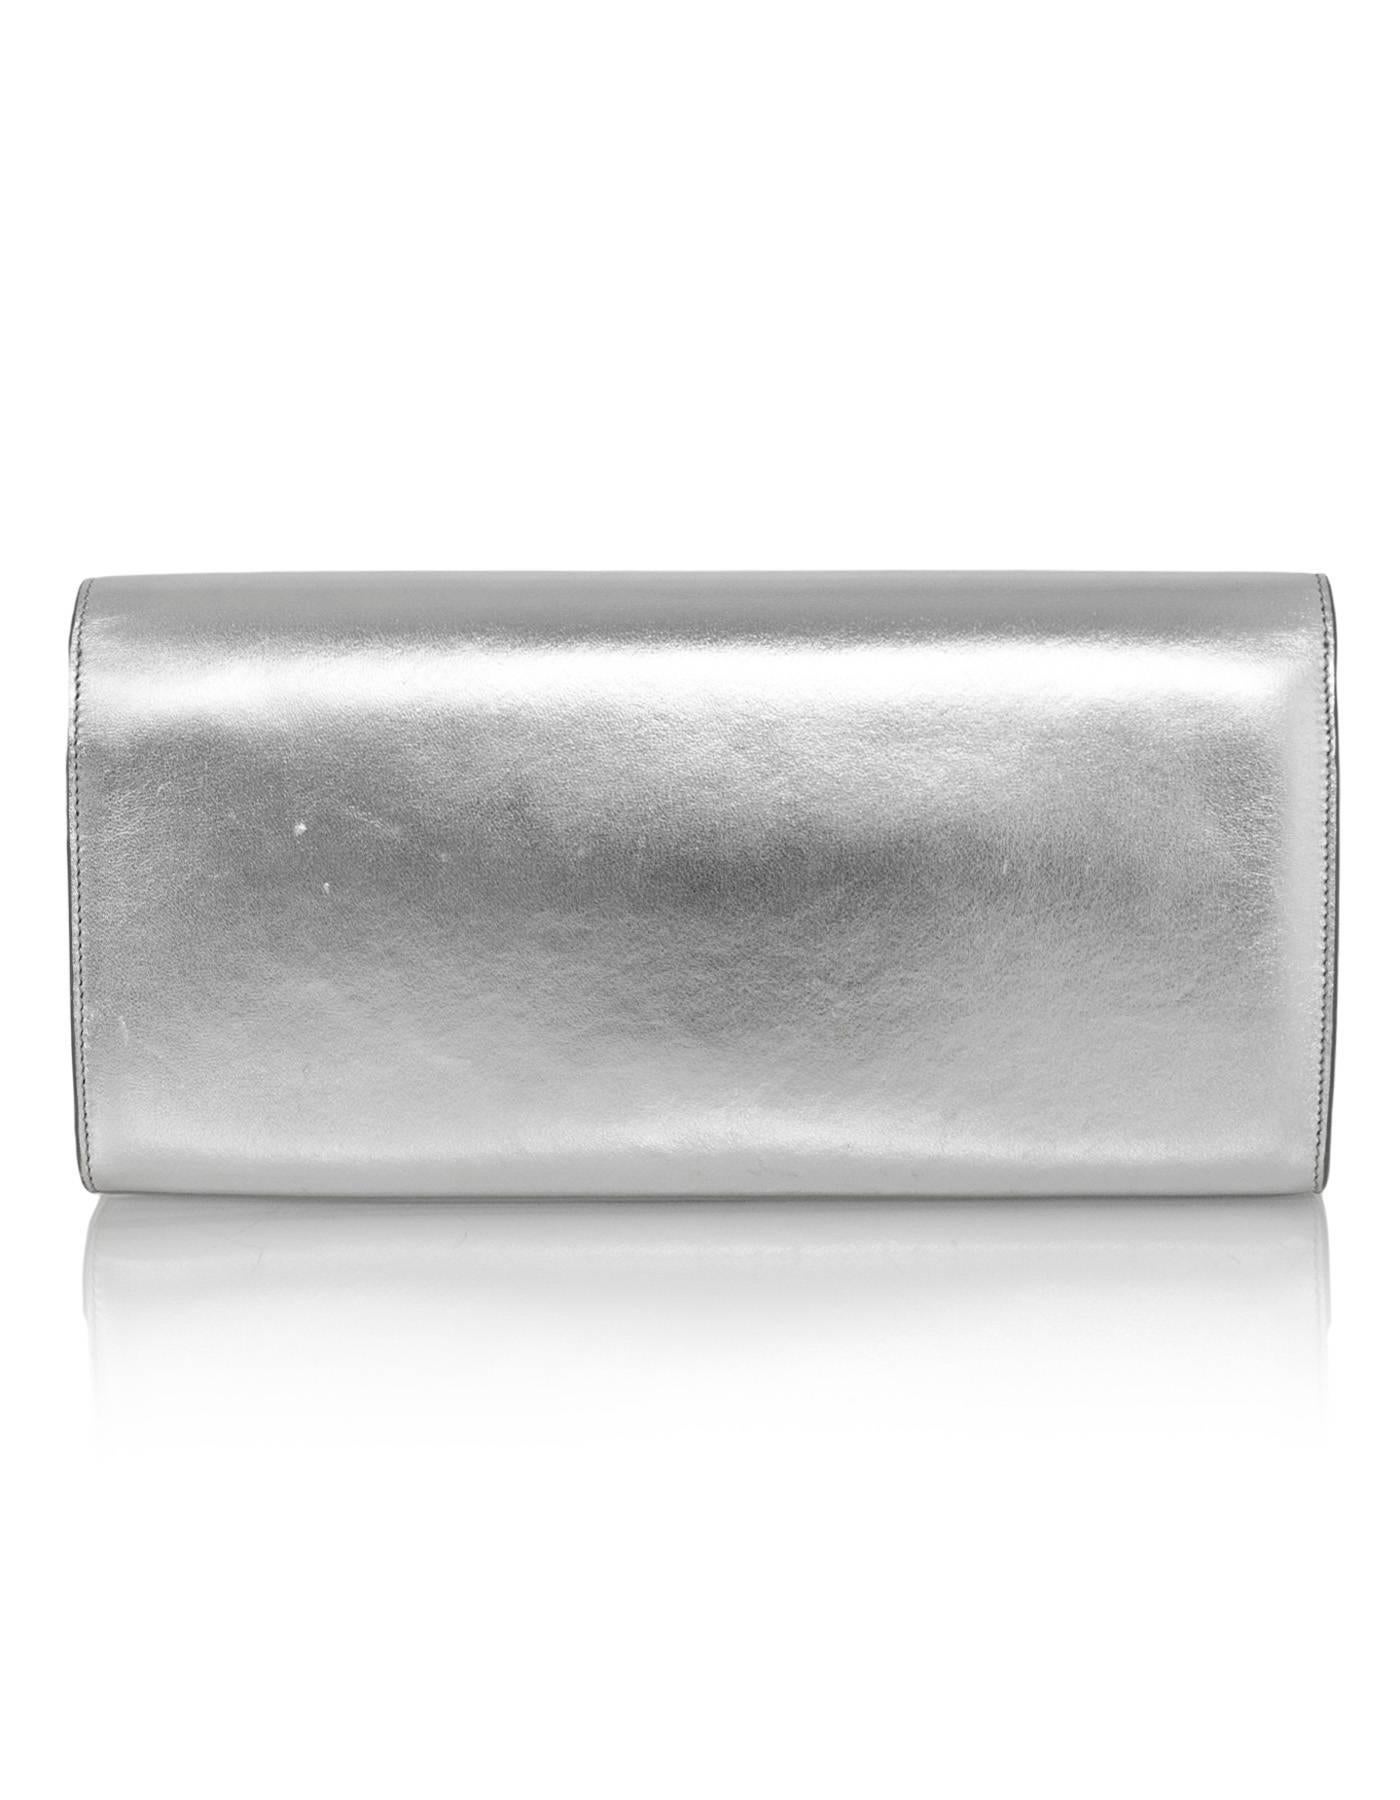 silver ysl clutch bag